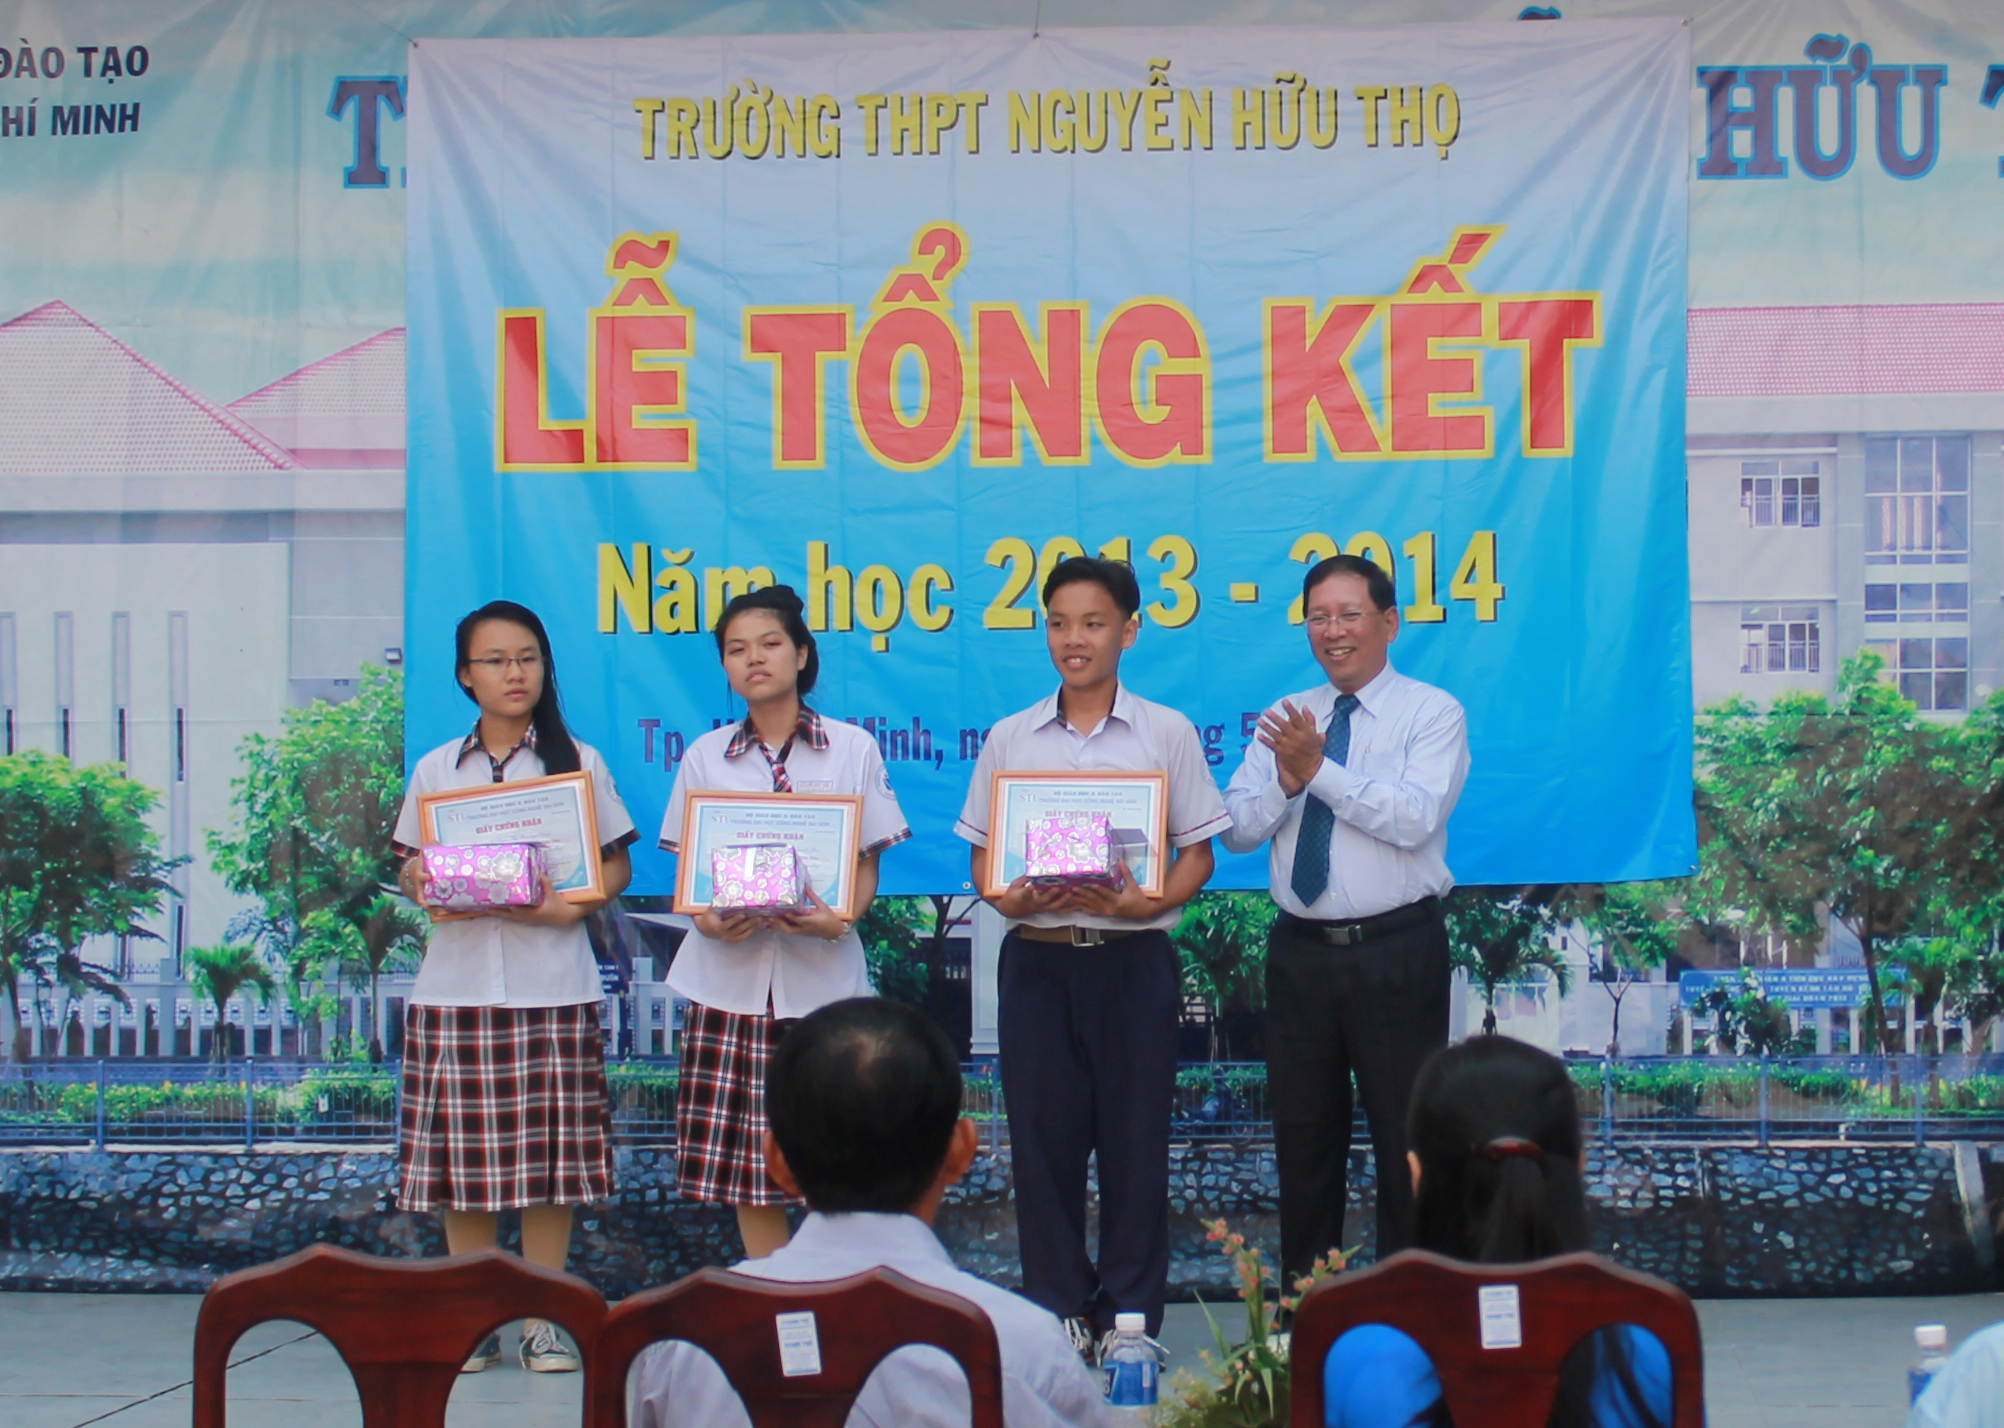 Trường ĐH Công nghệ Sài Gòn trao học bổng “STU – Chắp cánh ước mơ” tại Trường THPT Nguyễn Hữu Thọ